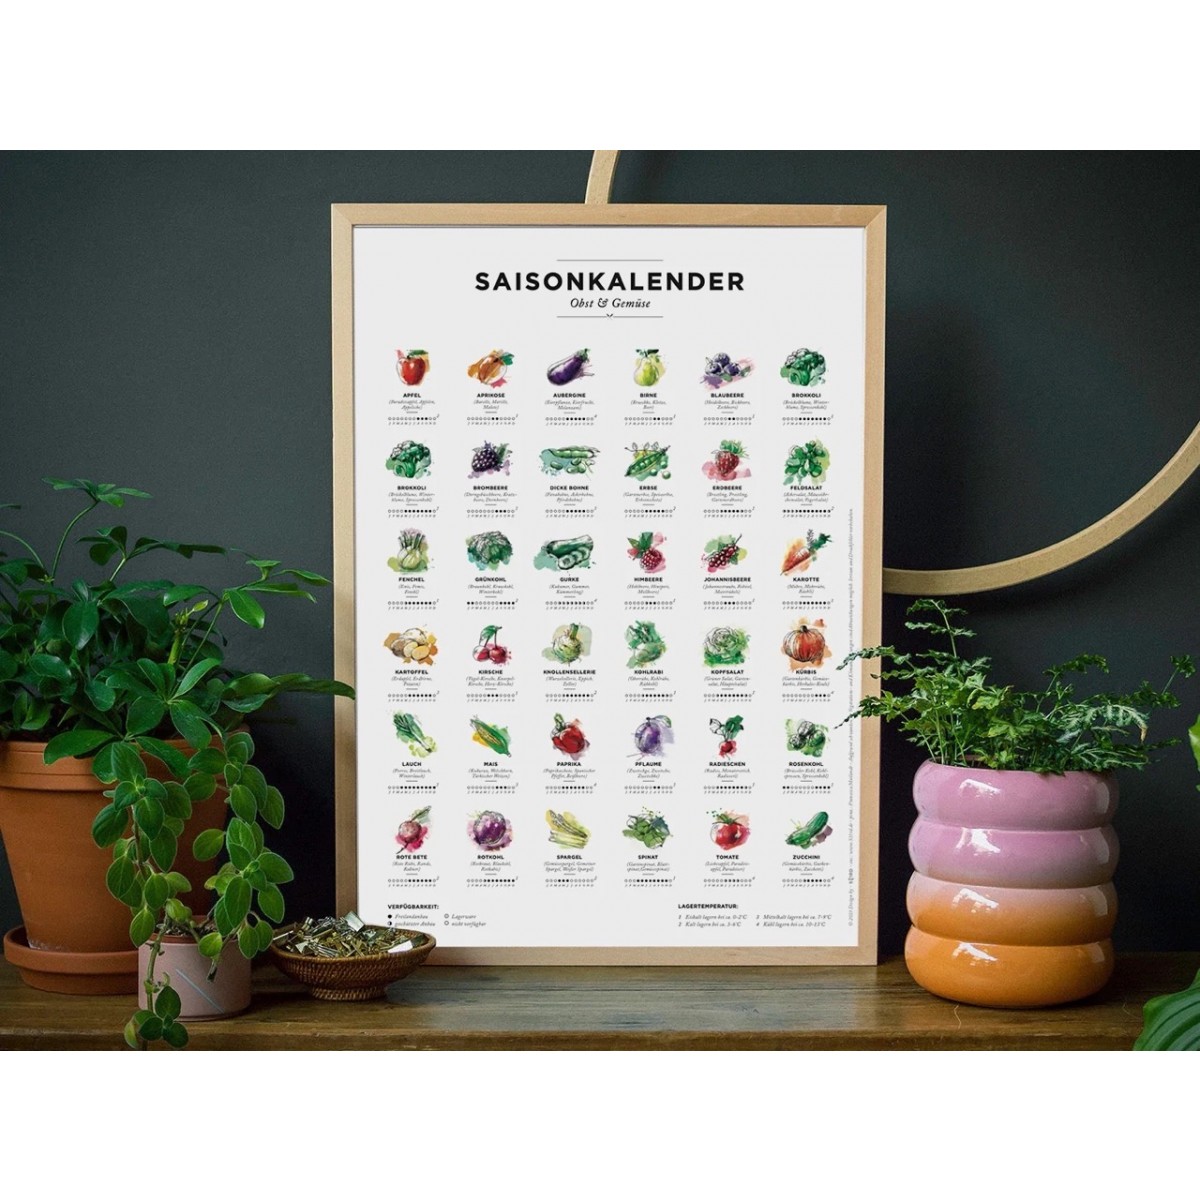 Saisonkalender Obst & Gemüse im Garten – Poster / Plakat in Farbe (ohne Rahmen)